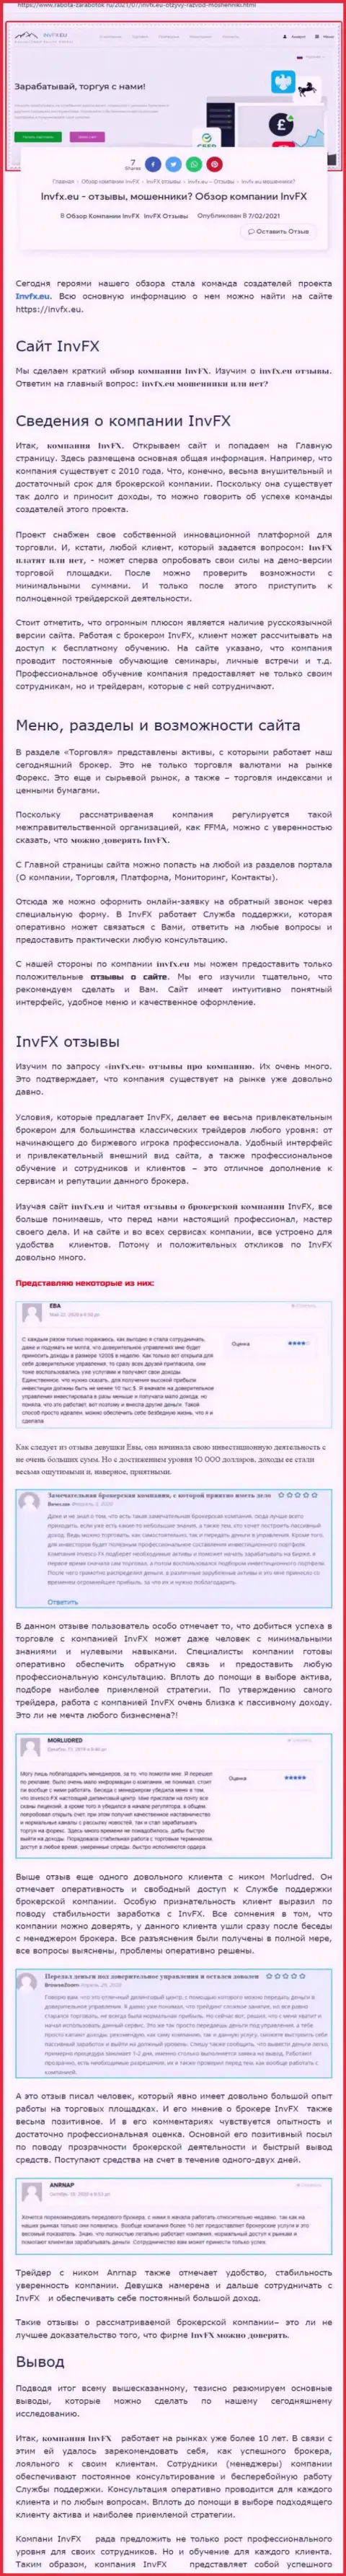 Материал сайта работа заработок ру об ФОРЕКС брокерской организации ИНВФХ